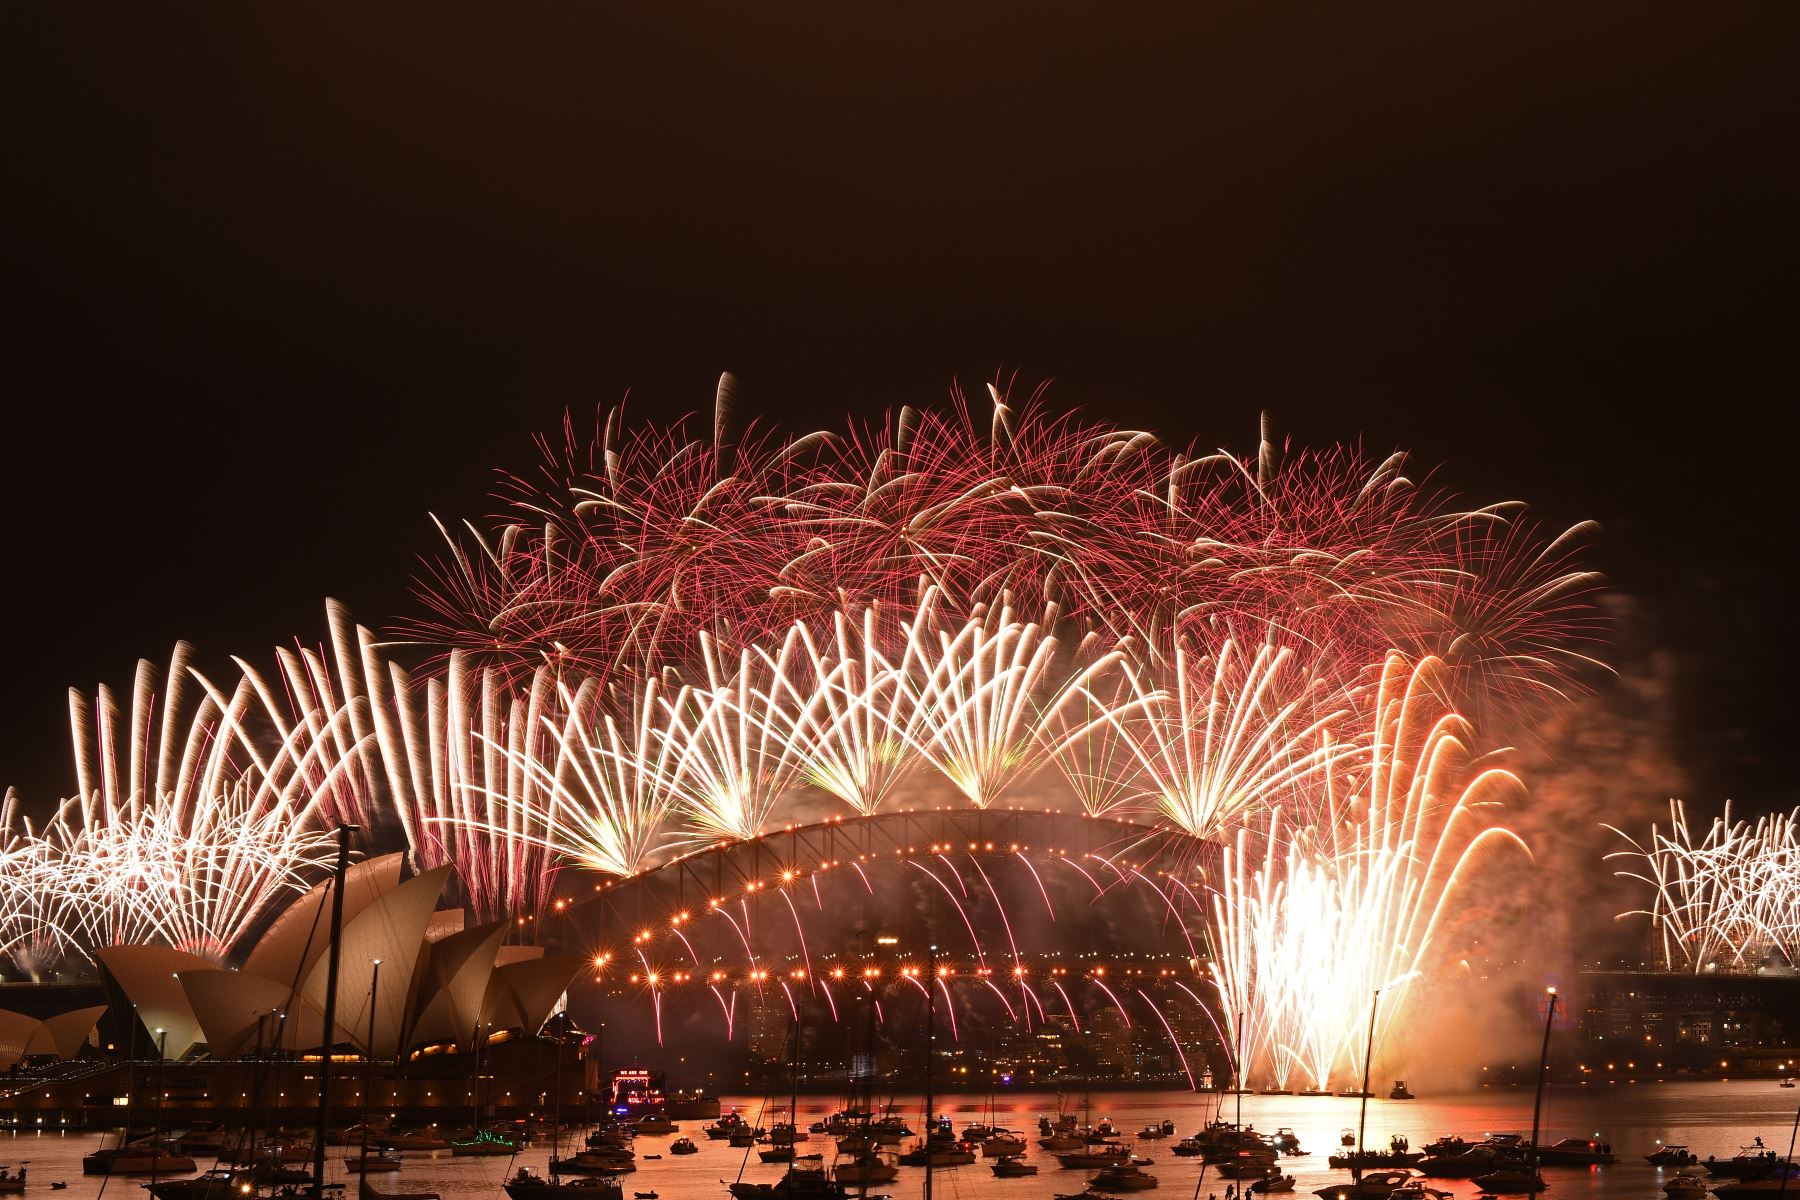 Fuegos artificiales estallan sobre el icónico Harbour Bridge y la Opera House de Sídney durante el espectáculo de fuegos artificiales el 1 de enero de 2021.
Foto: ANDINA/AFP